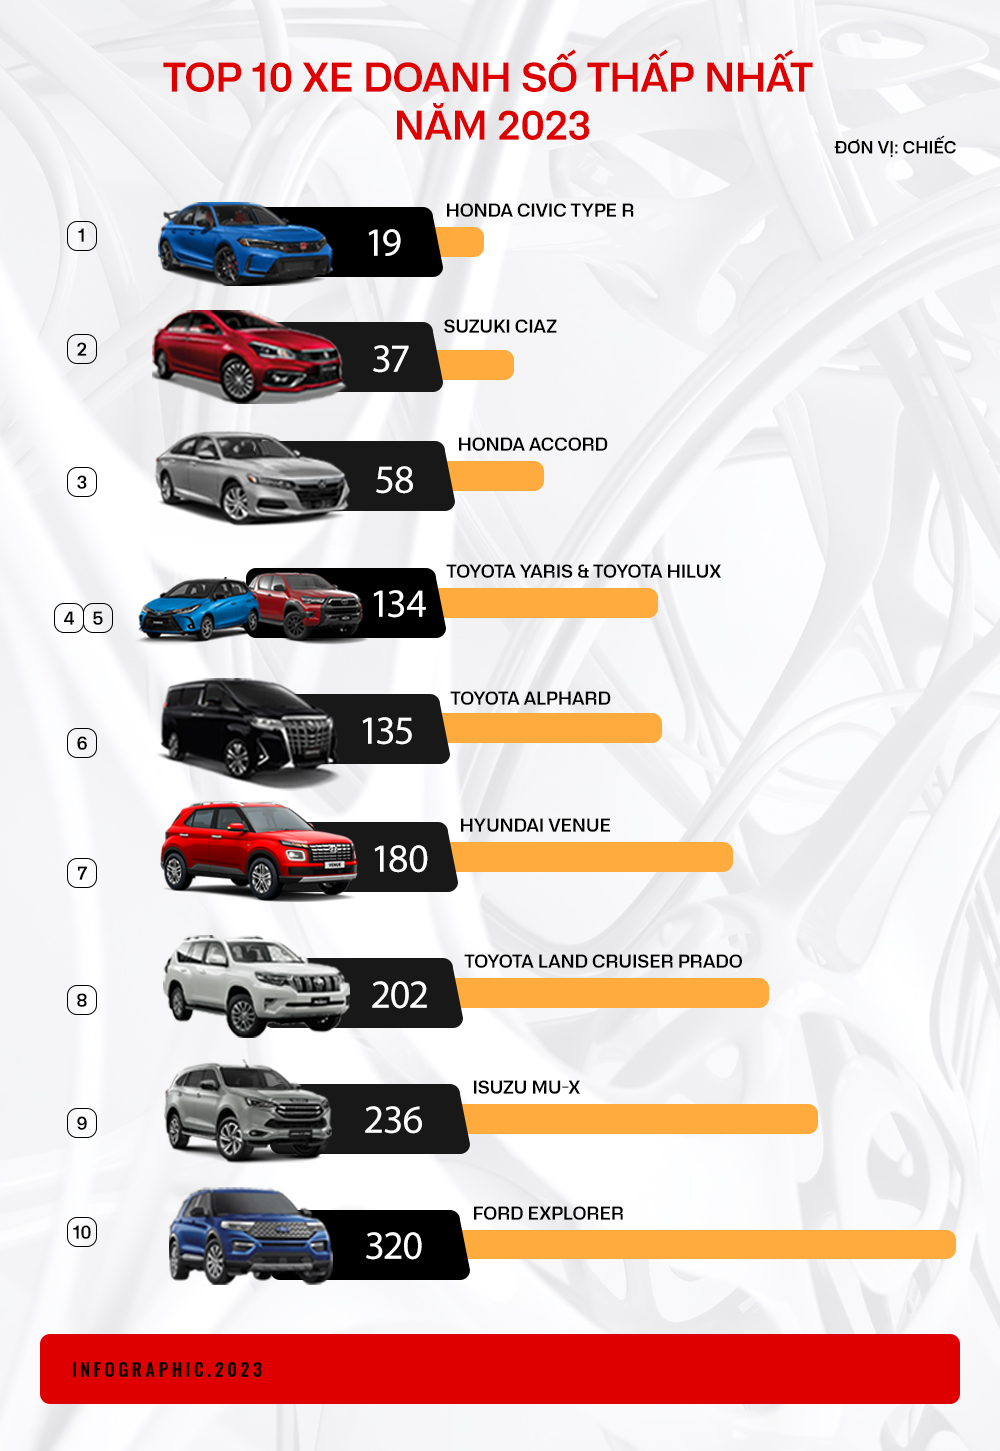 10 mẫu xe có doanh số thấp nhất 2023: 8/10 xe góp mặt từ năm ngoái, phần lớn là thương hiệu Nhật Bản - Ảnh 1.